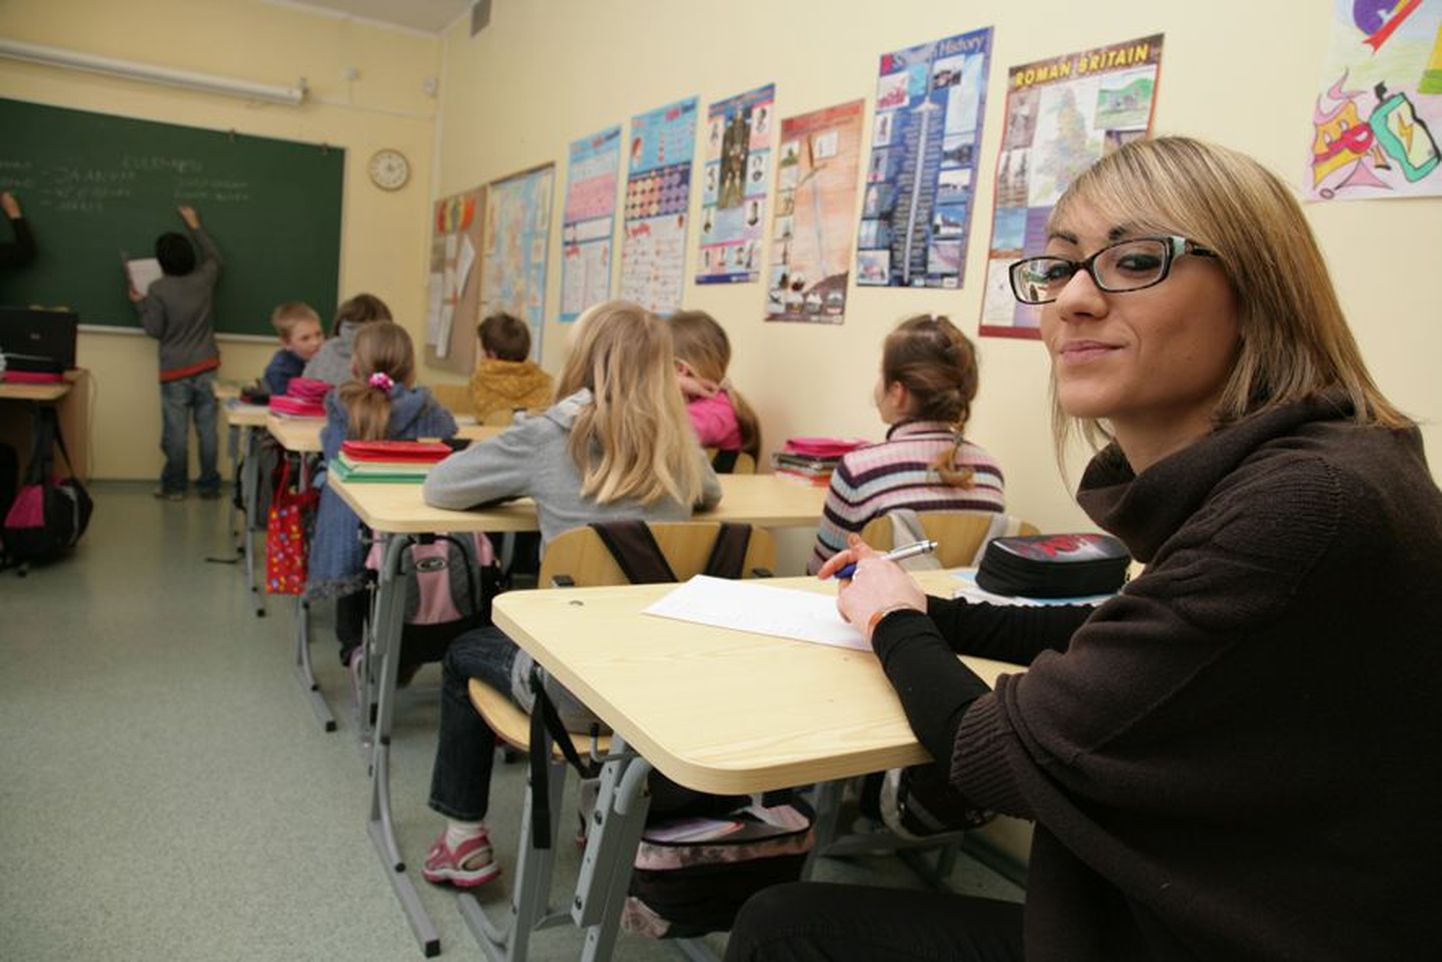 Inglise keele õpetaja praktikal olev itaallanna Rosa Argentieri oli kuus aastat tagasi Tallinnas vahetusõpilane ning siis võitiski Eesti ta südame. Vahepealsed aastad on Rosa aeg-ajalt unistanud kunagi siia tagasi tulla.